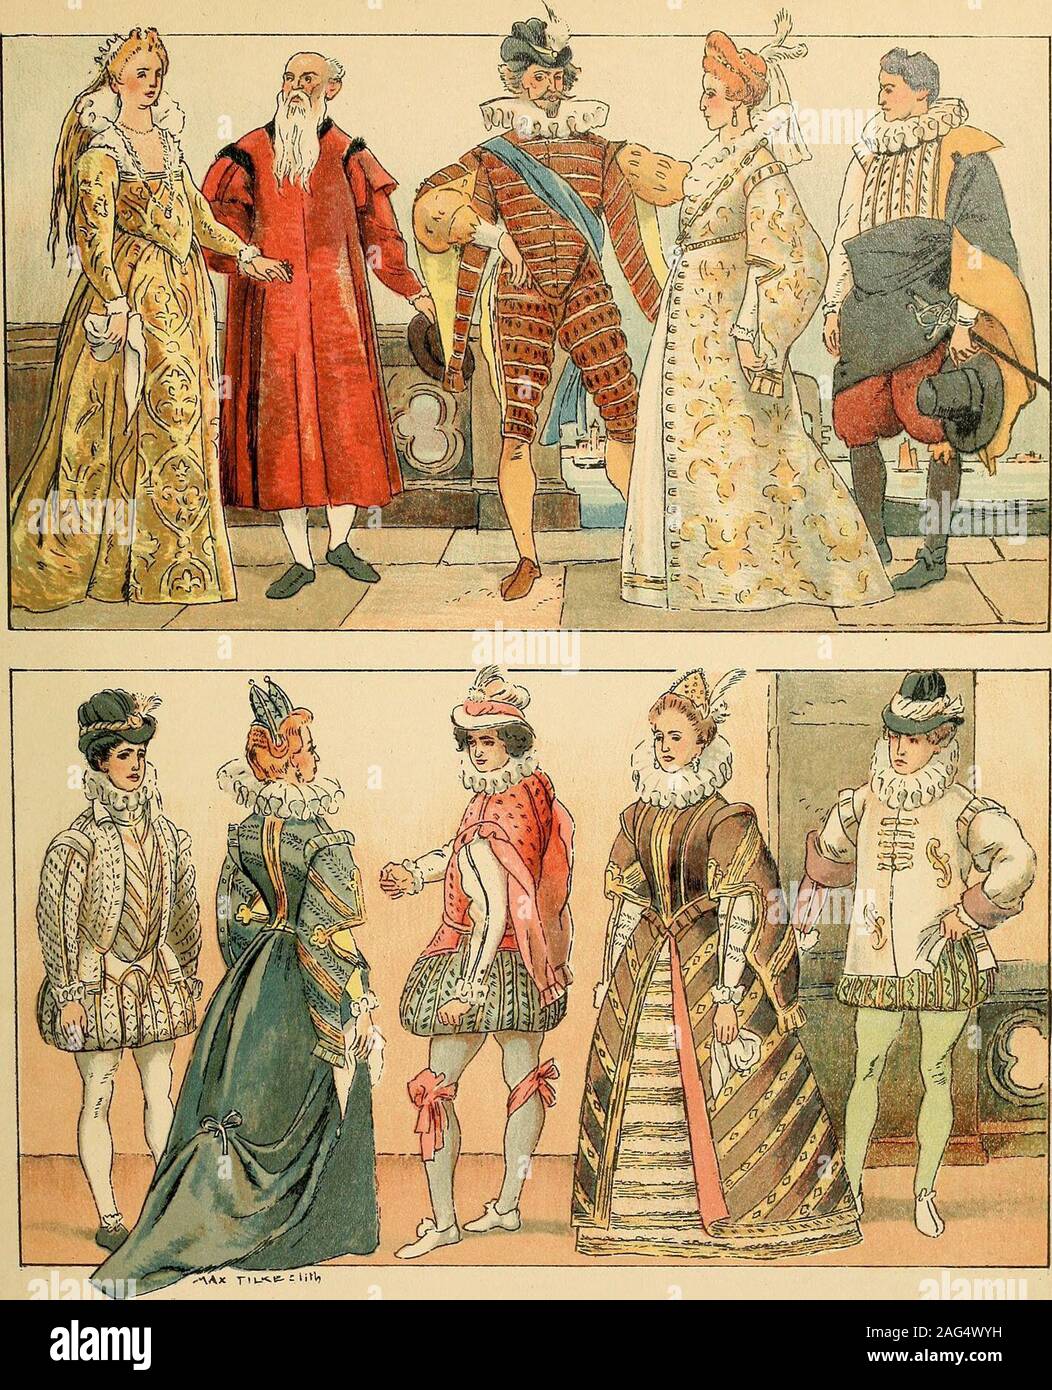 . Geschichte des Kostüms. 1600—1750 SUISSE GEDRUCKT UND VERLEGT BEI ERNST WASMUTH A.-G., BERLIN Ml ITALIEN VENEDIG UND MAILAND VORNEHME KOSTÜME DES BEGINNENDEN17. JAHRHUNDERTS 6 7 8 9 10 In dem selbststolzen Venedig behauptete die Damentracht ihre Überlieferungengegenüber der spanischen Mode, welche die Herrenwelt mit ergriff, soweit nichtamtliche und ältere Respektspersonen ebenfalls in ihrem Herkommen verblieben.So erhielt sich auch Venedig die flächige Entlahung der seidenen Damaste undanderer luxuriöser Stoffe. Auch in Mailand blieb die Damentfacht konservativer. Fig. J. Venezianische Dame Stock Photo